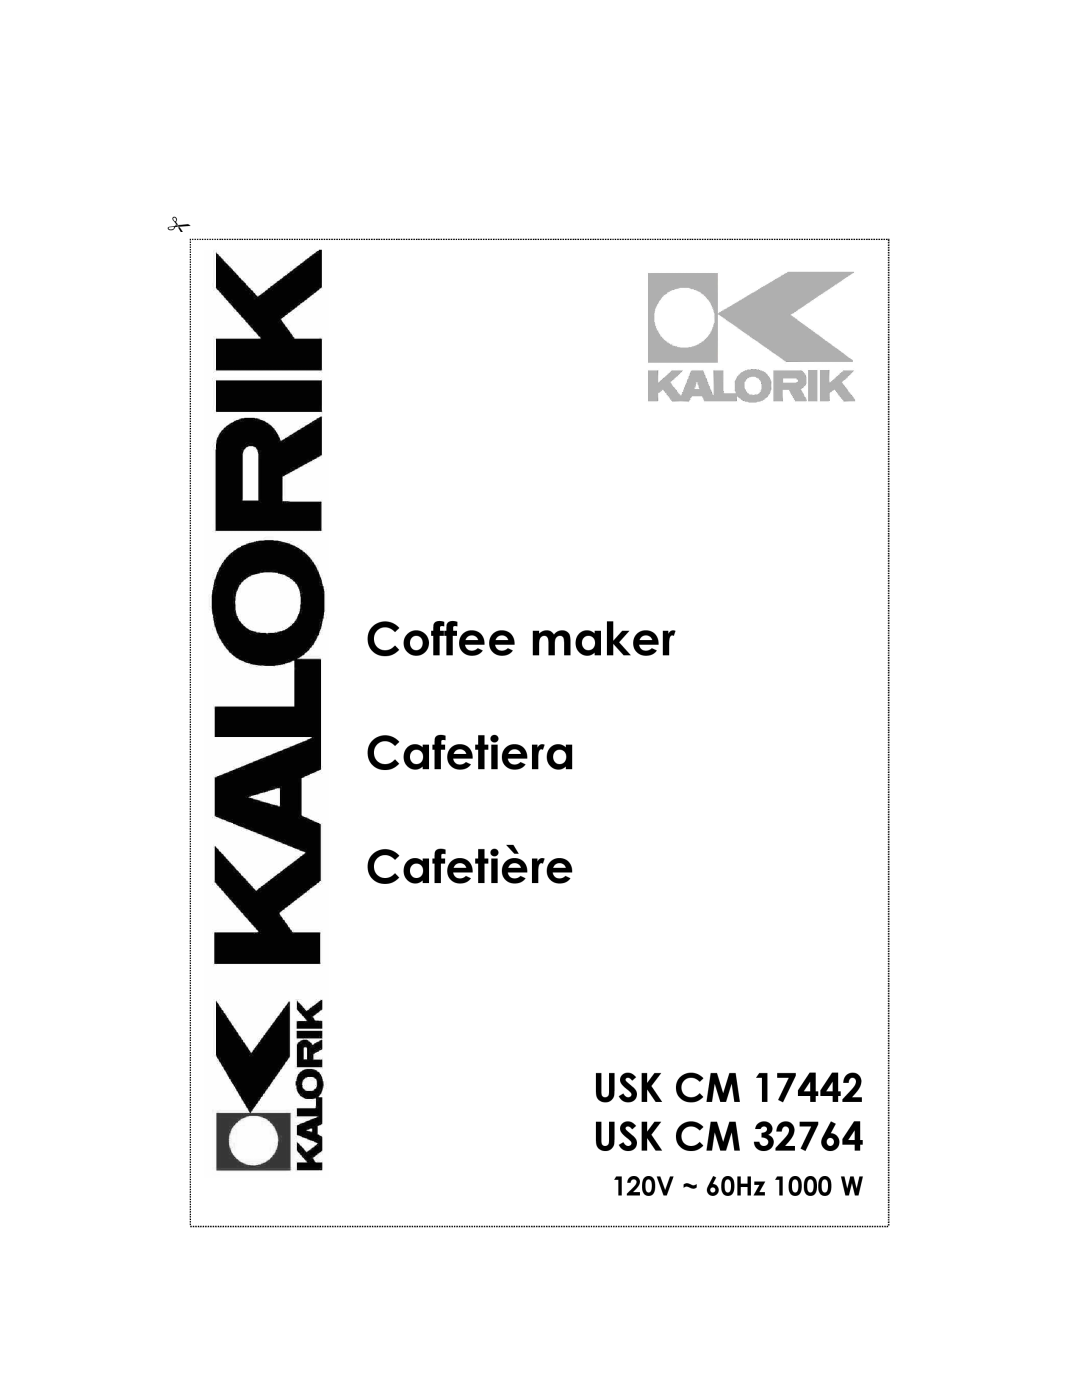 Kalorik USK CM 32764, USK CM 17442 manual Usk Cm Usk Cm, 120V ~ 60Hz 1000 W, Coffee maker Cafetera Cafetière 